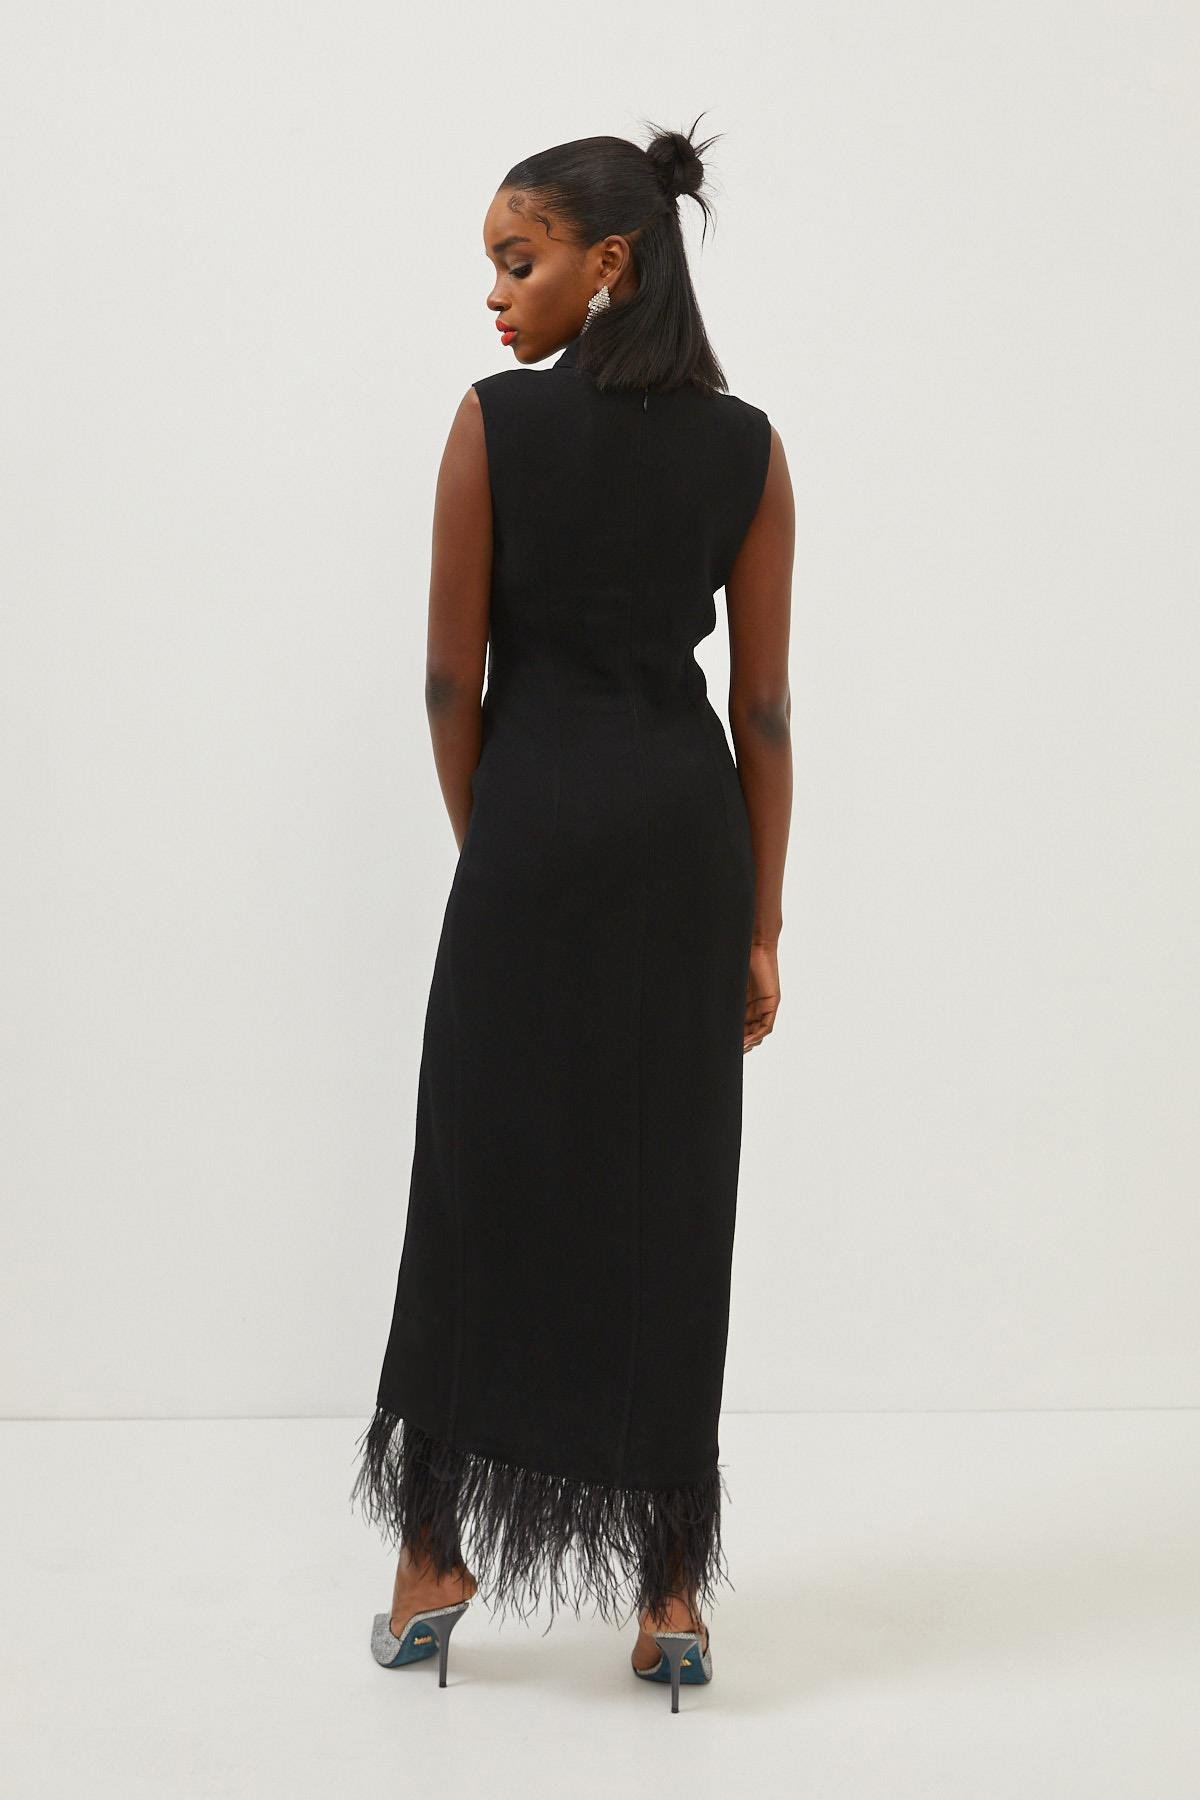 Kadın Siyah Dik Yaka Kolsuz Tüy Detaylı Maksi Boy Yırtmaçlı Elbise  ST070W40150901 | Setre